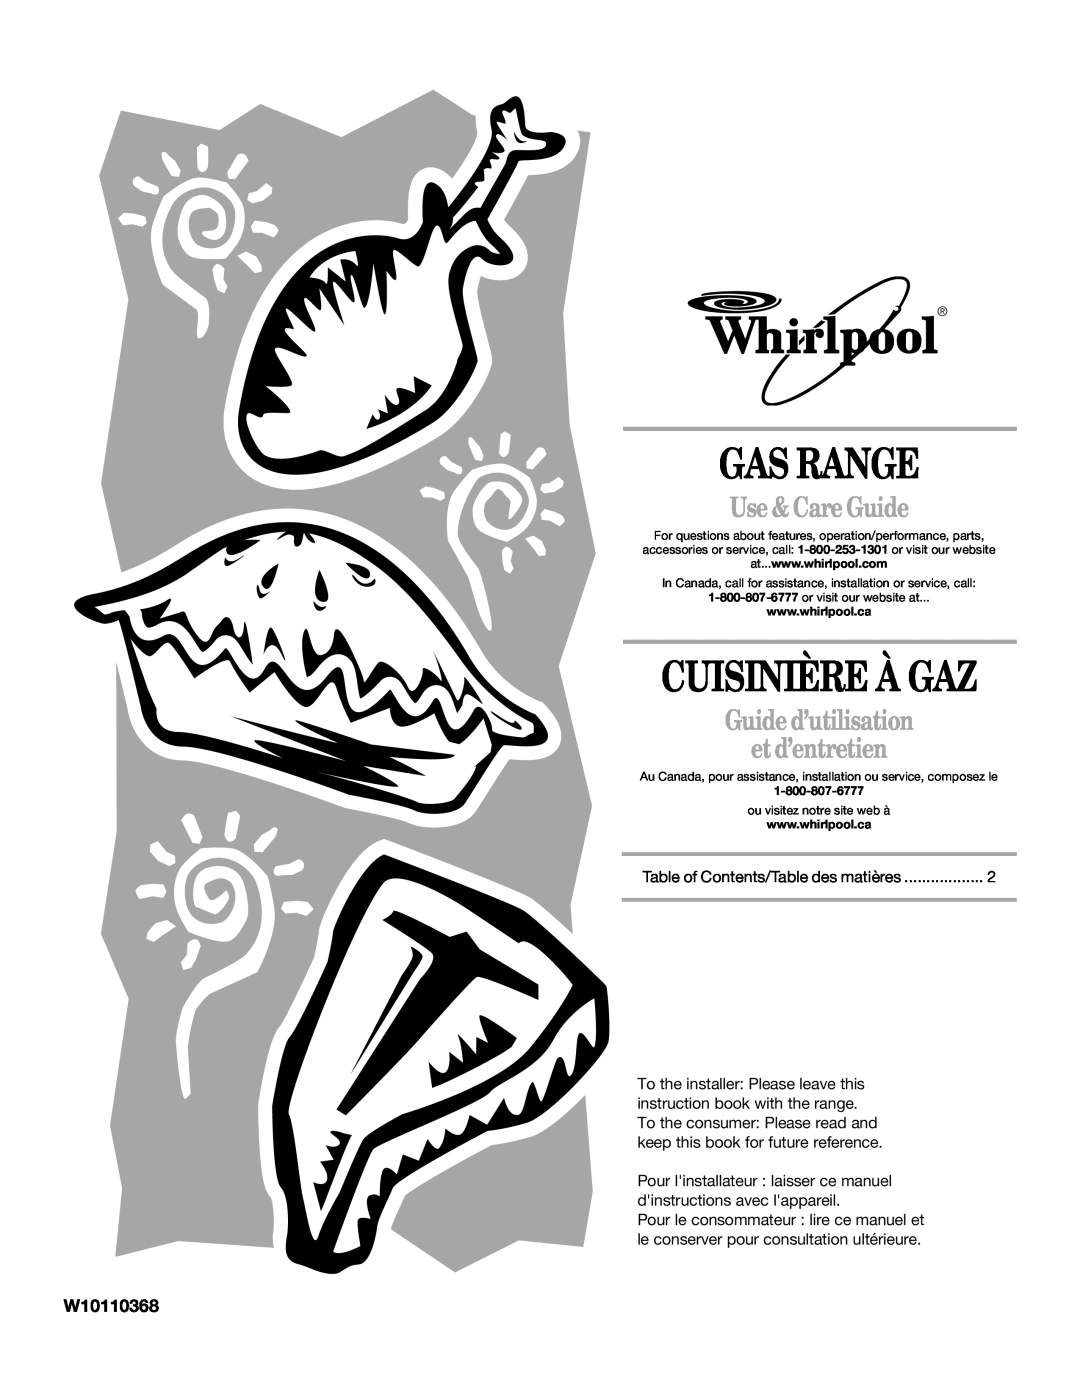 Whirlpool W10110368 manual Gas Range, Cuisinière À Gaz, Use & Care Guide, Guide d’utilisation et d’entretien 